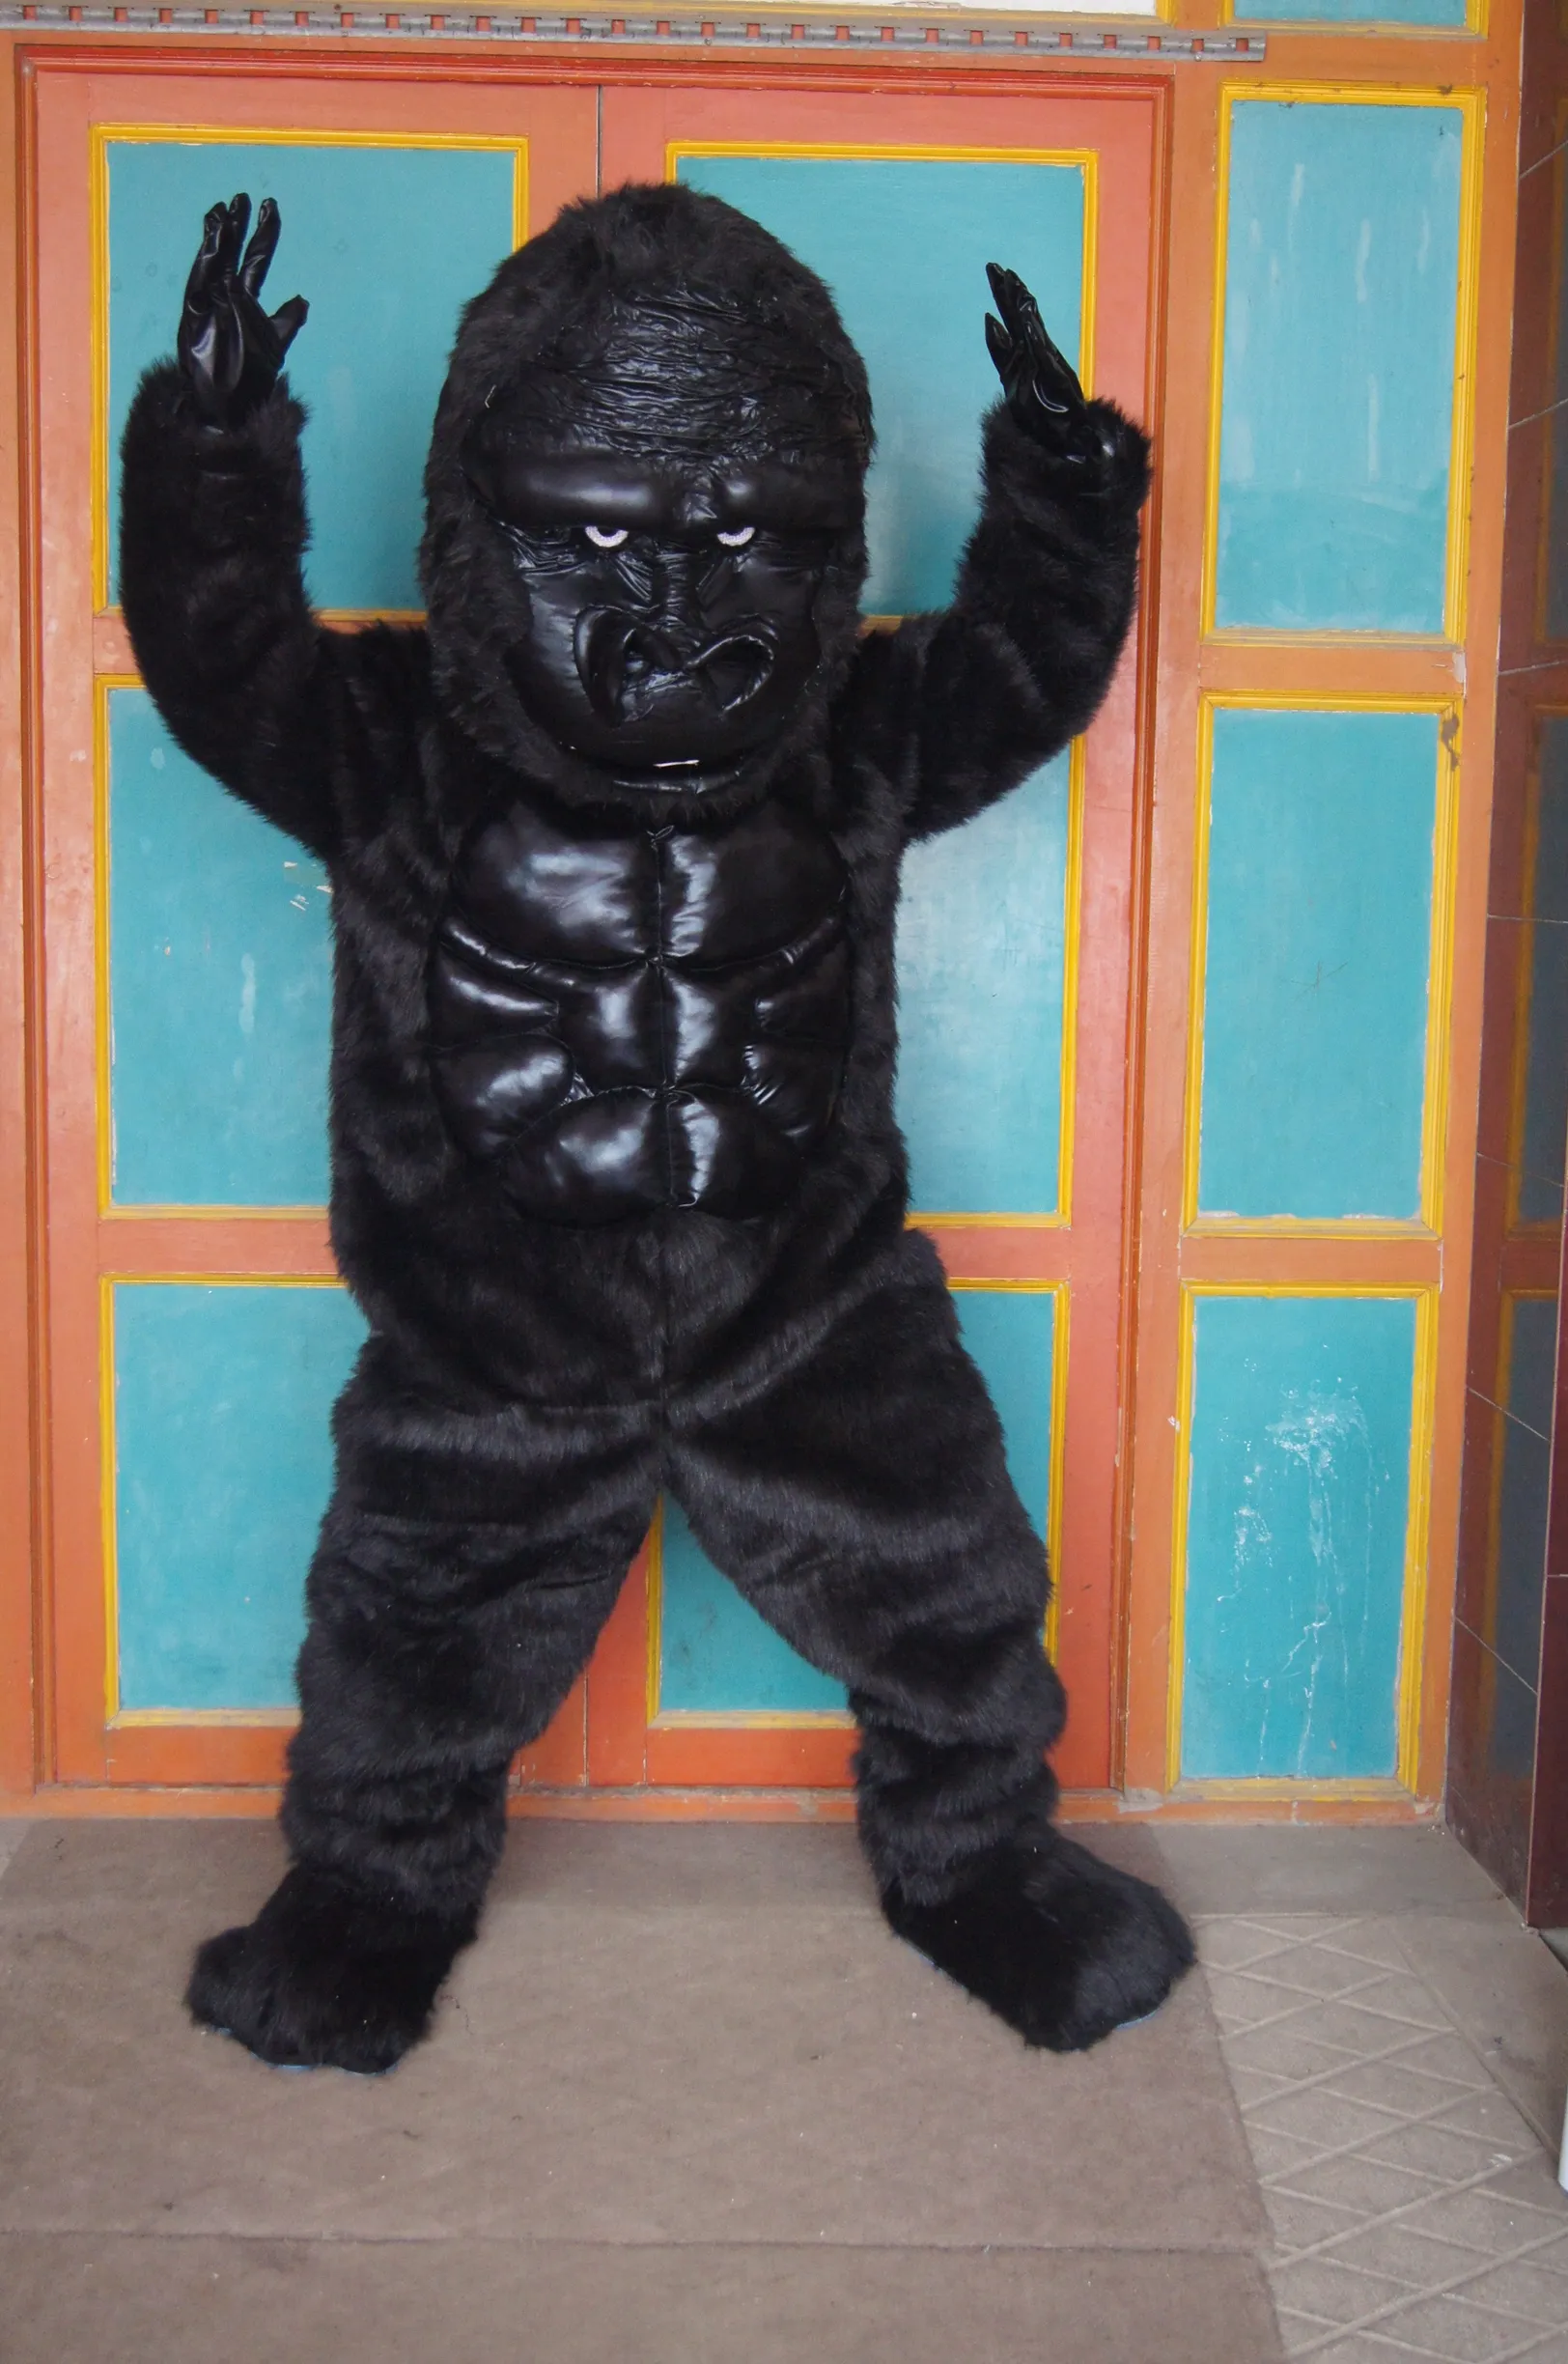 Venda quente Dos Desenhos Animados Filme Personagem Real orangotango gorila chimpanzé jocko chimpanzé traje da mascote Adulto Tamanho frete grátis